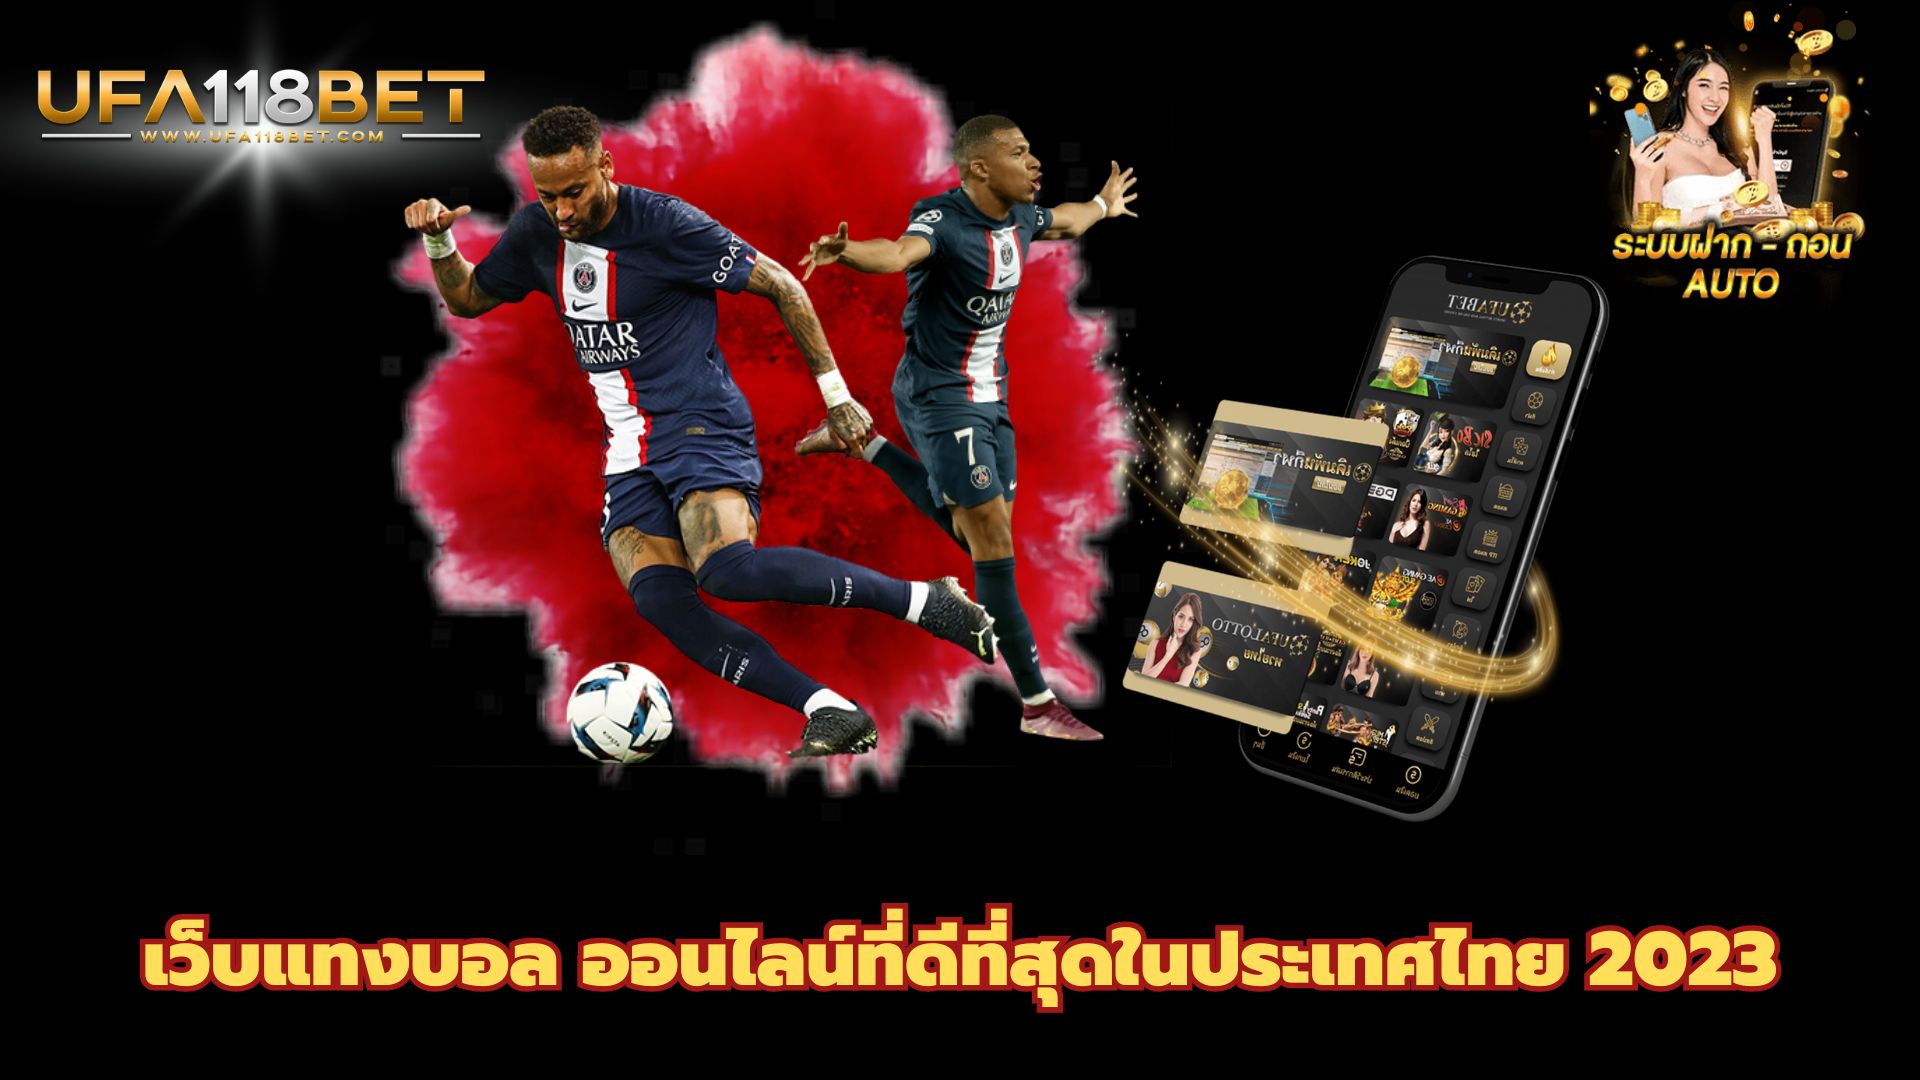 เว็บแทงบอล ออนไลน์ที่ดีที่สุดในประเทศไทย 2023